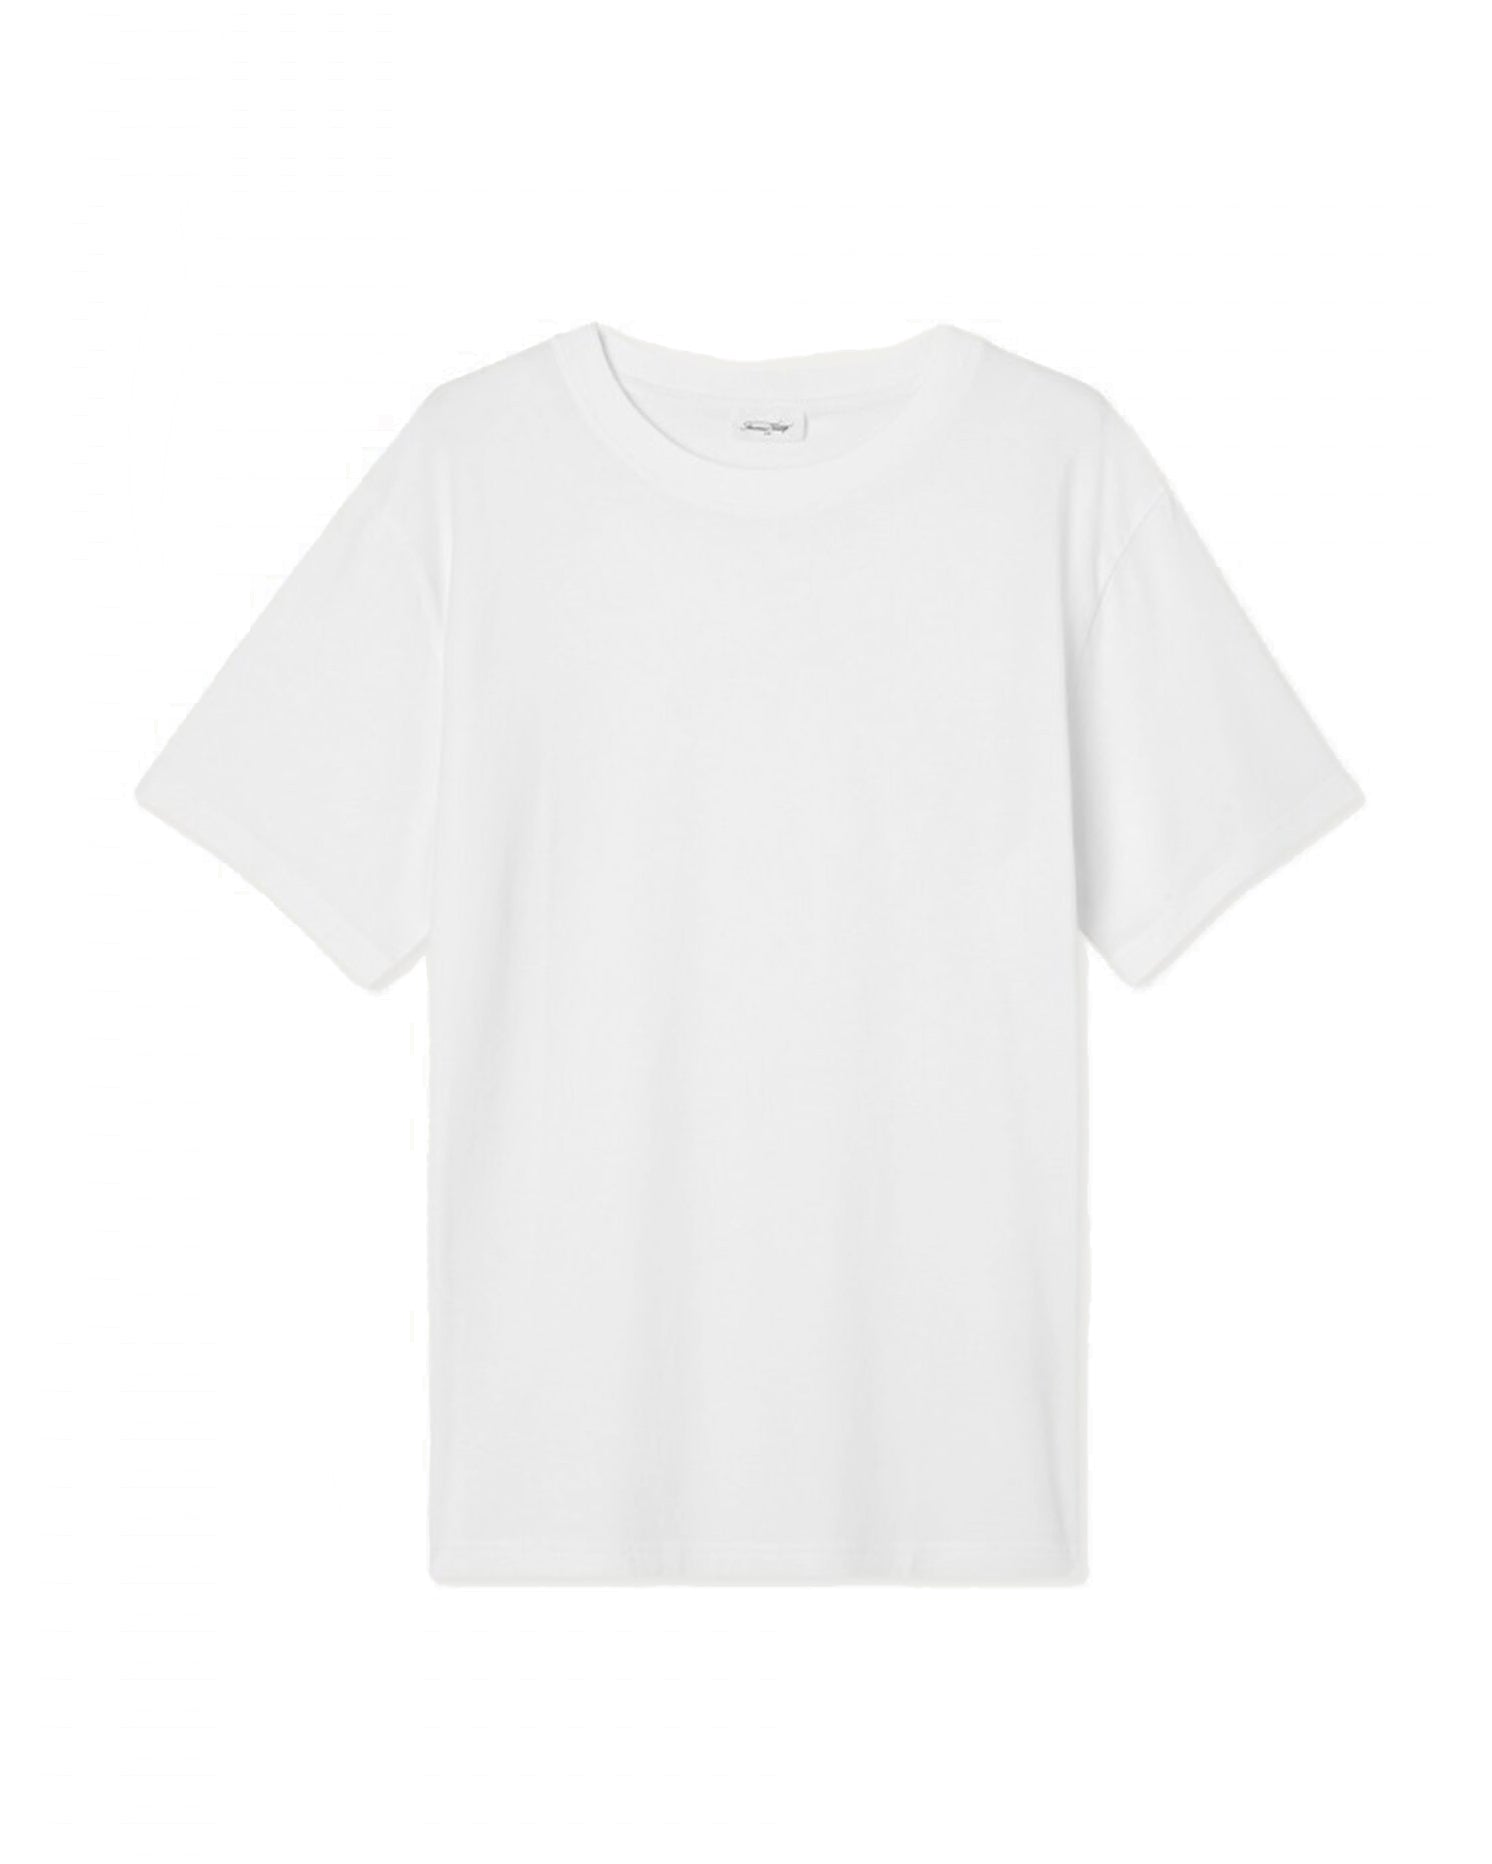 Vupaville t-shirt - Blanc